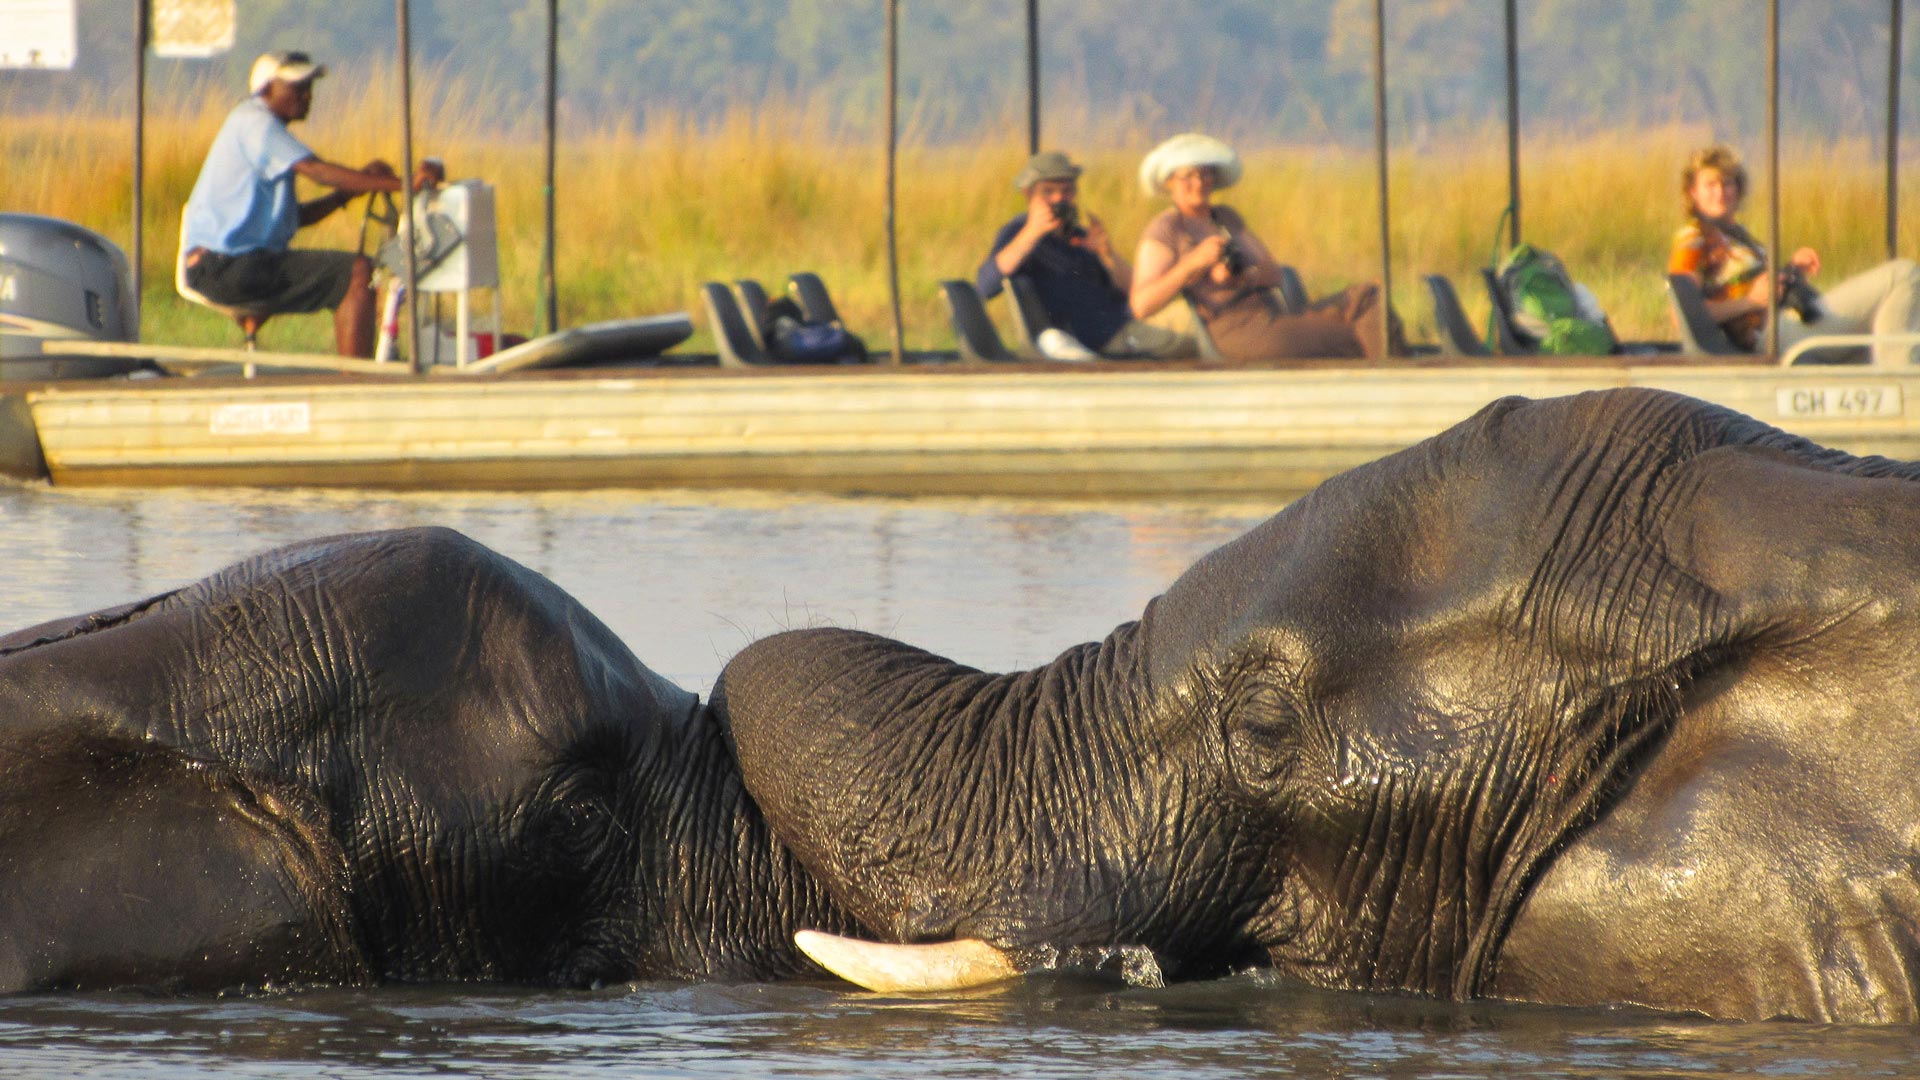 Zwei Elefanten baden im Chobe Fluss. Eine Gruppe Menschen beobachtet sie vom Safariboot aus